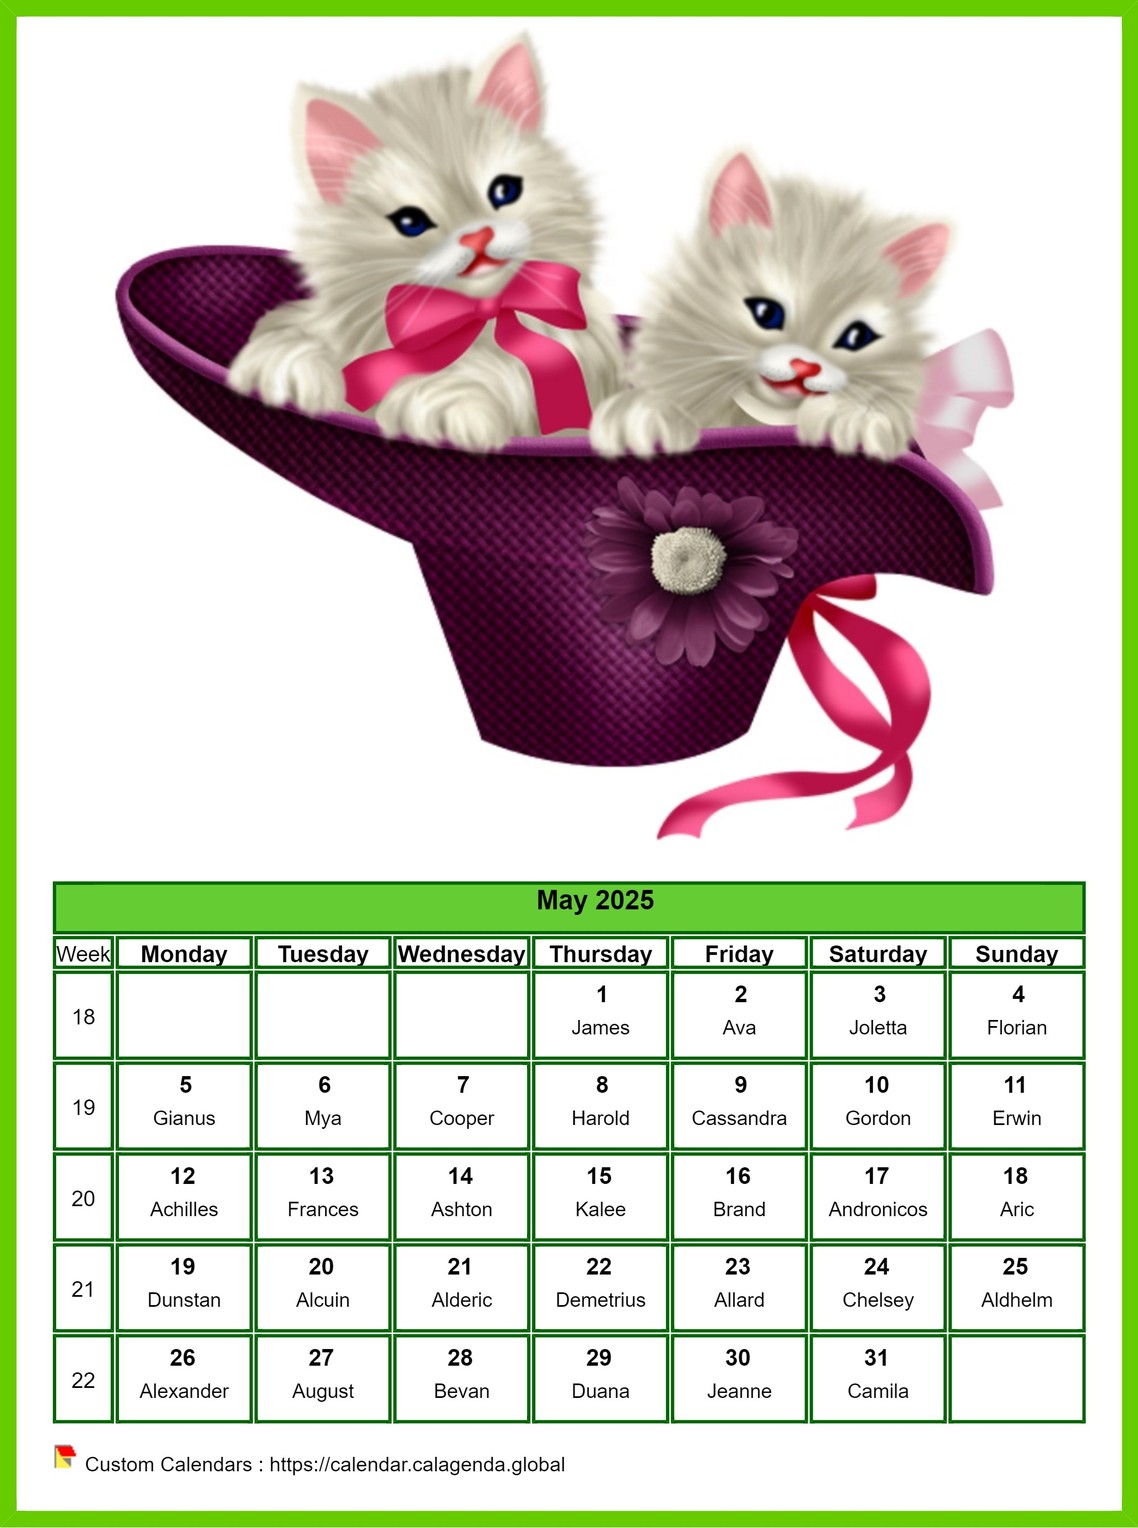 Calendar May 2025 cats